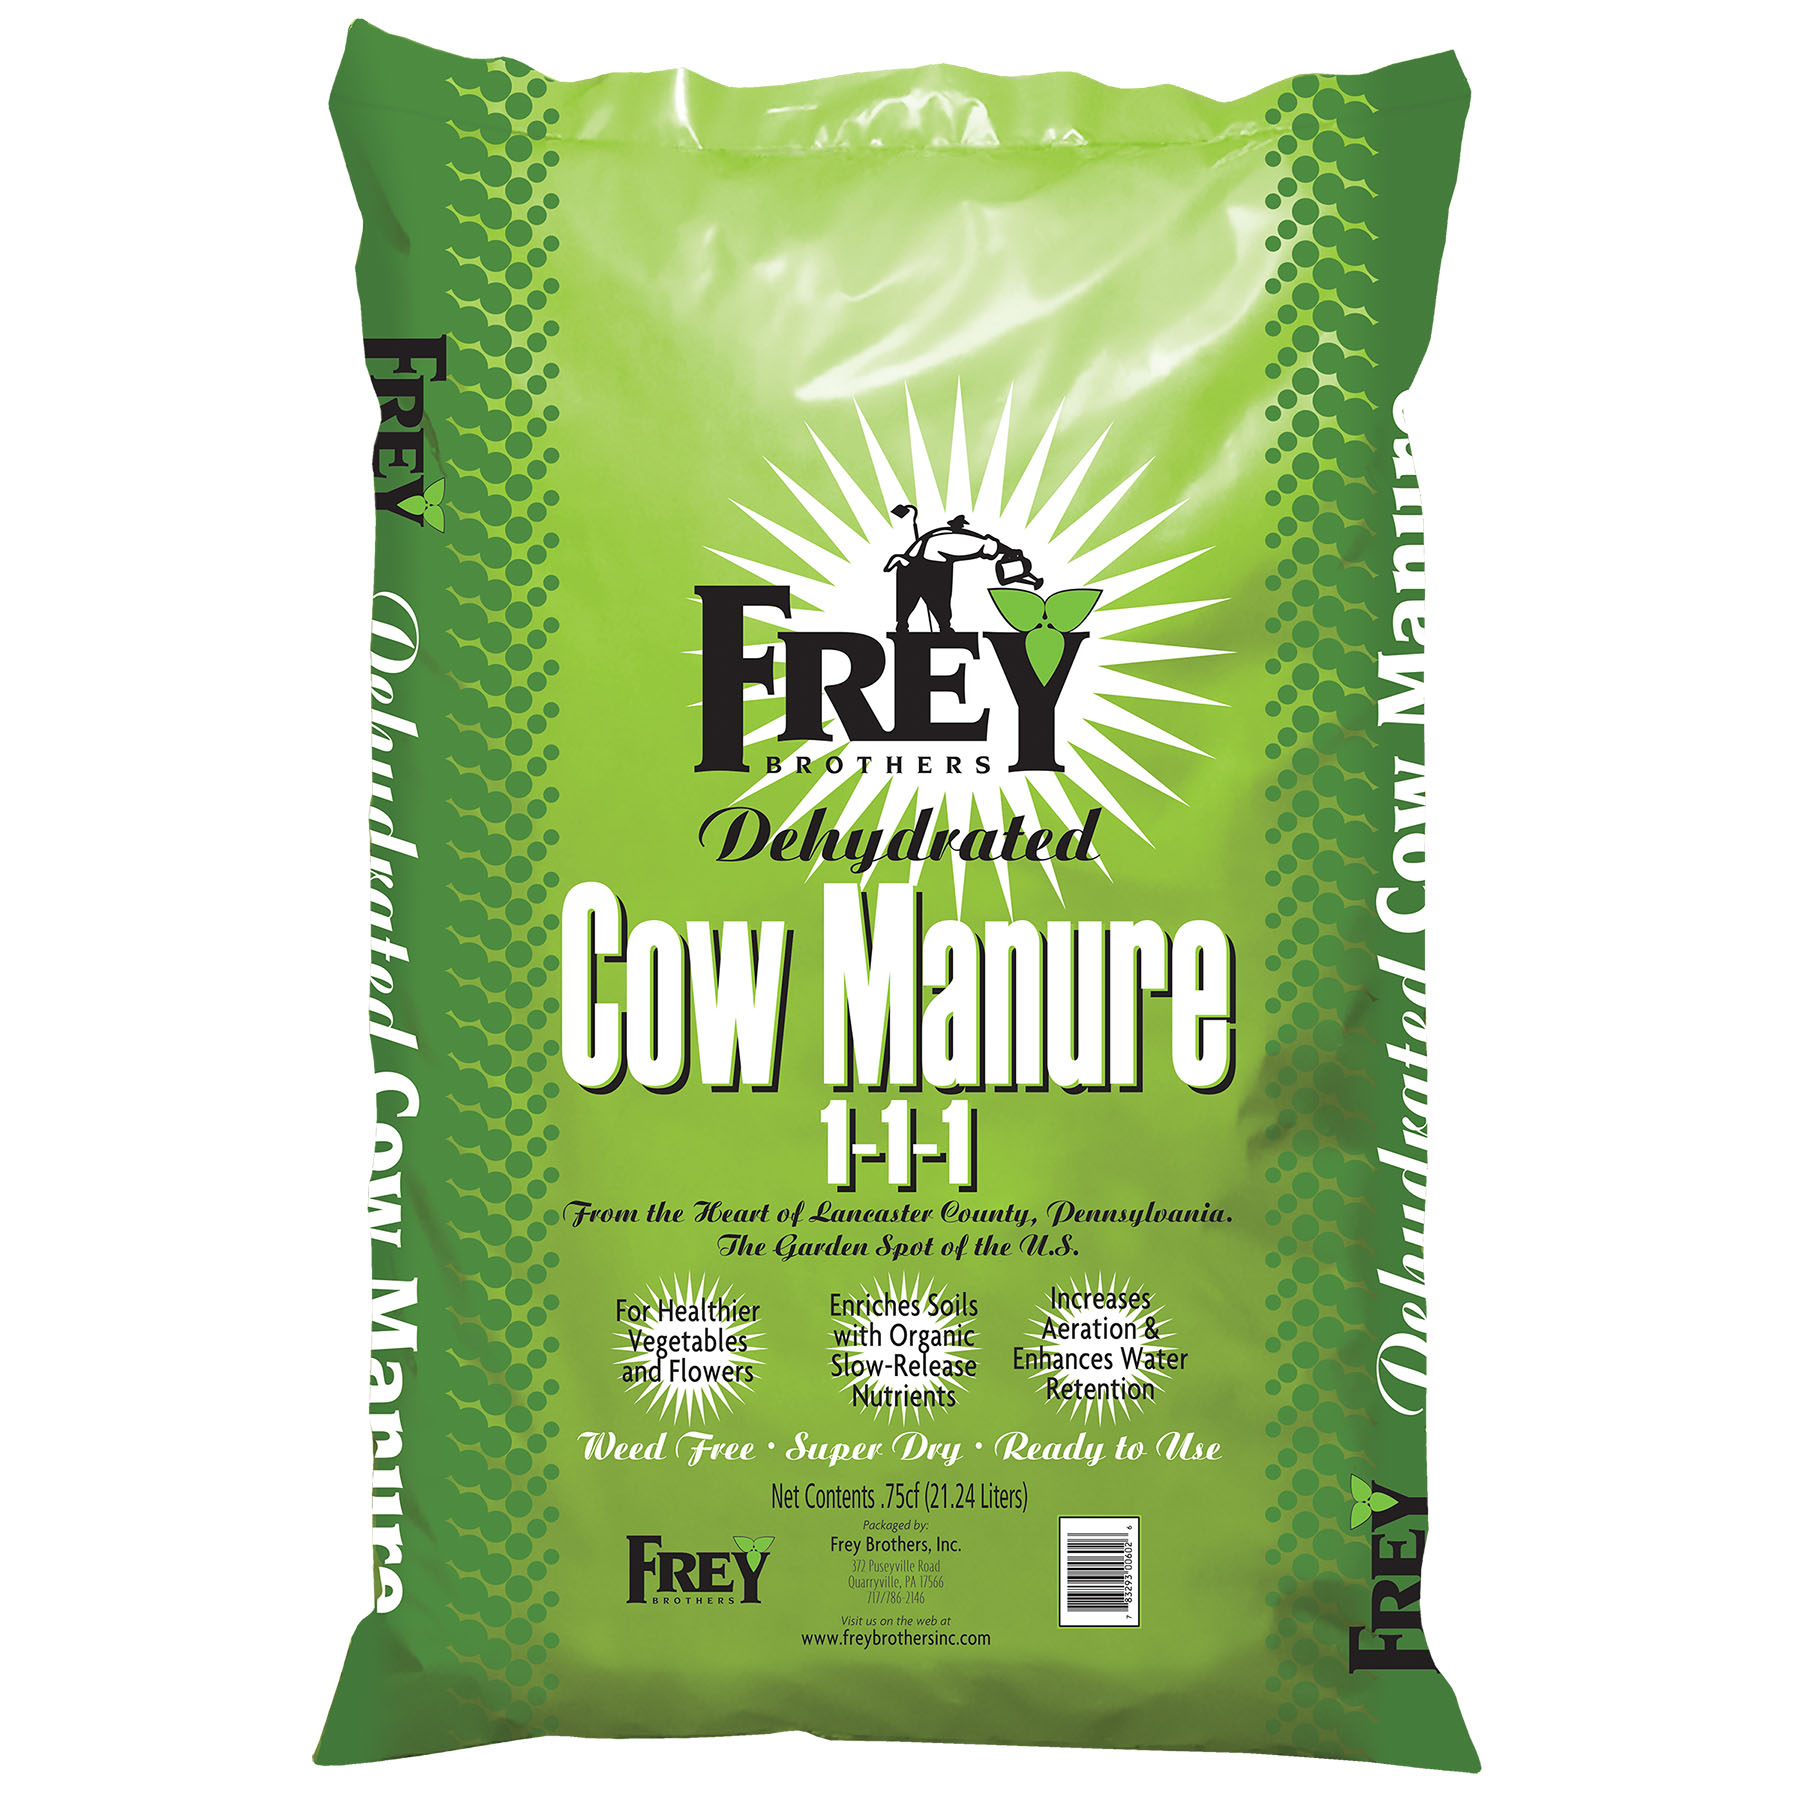 Frey Dehydrated Cow Manure 1-1-1 0.75 cu ft Bag - 75 per pallet - Garden Center